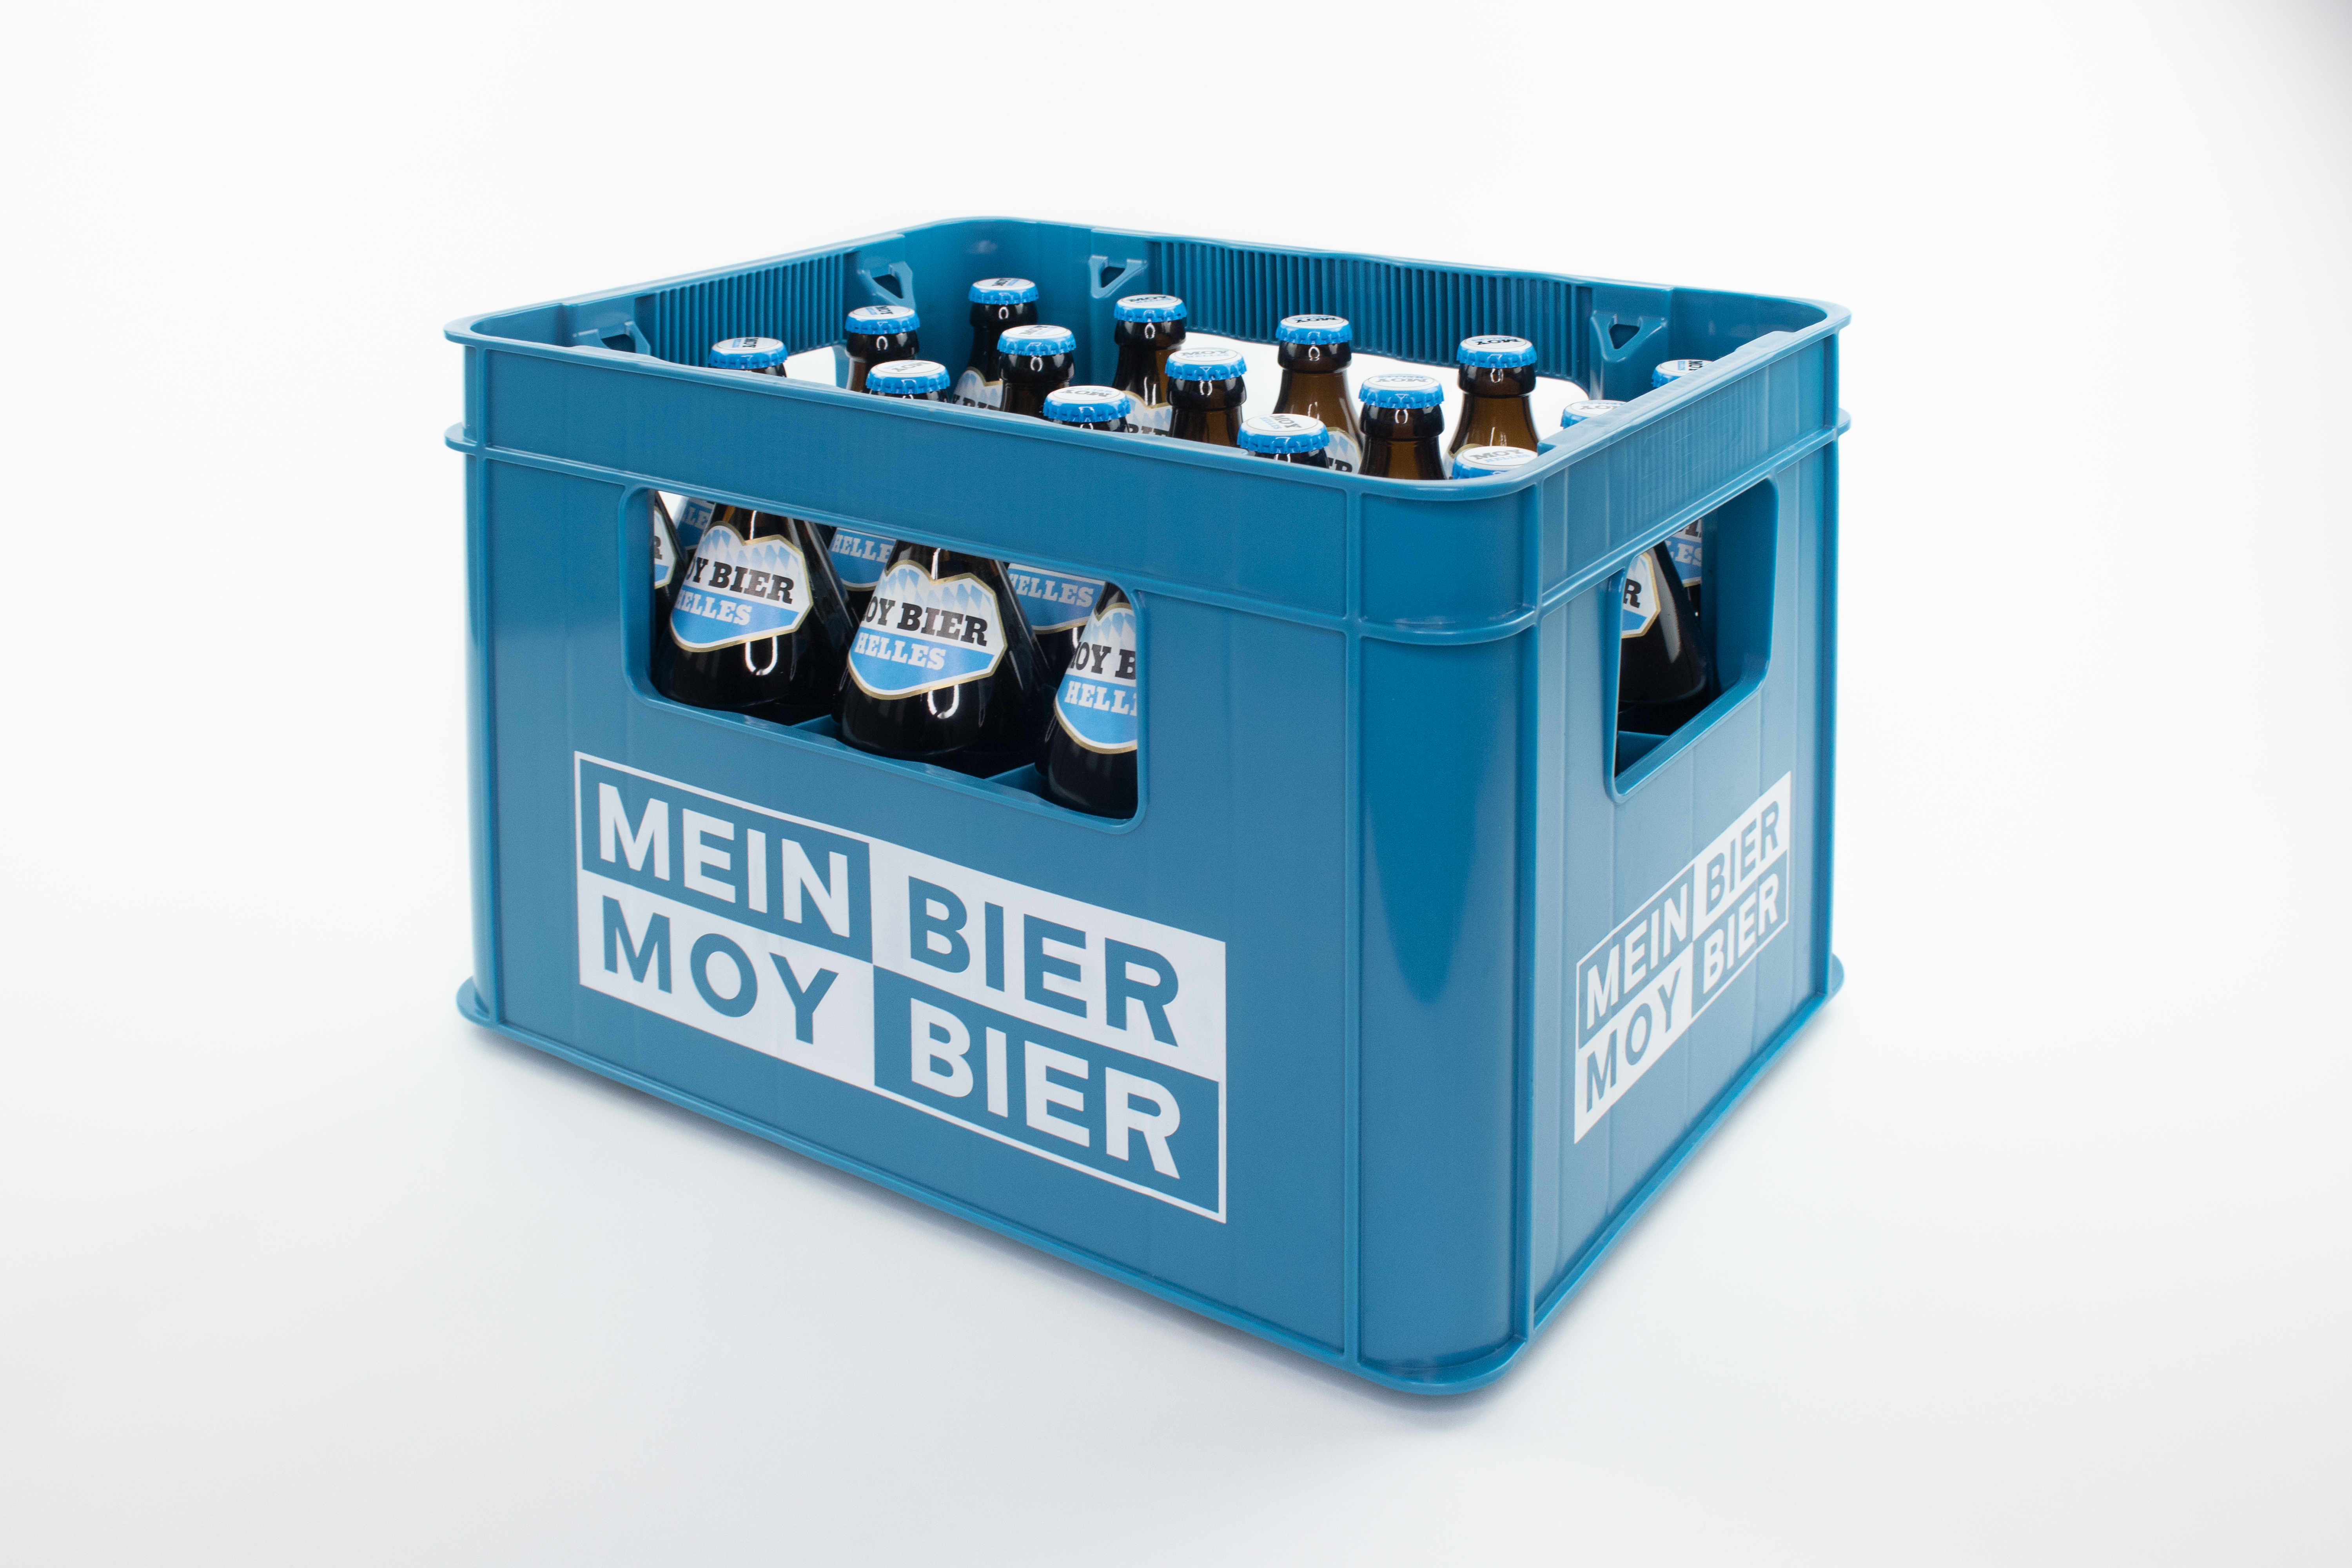 Hofbrauhaus Freising Moy Bier Helles